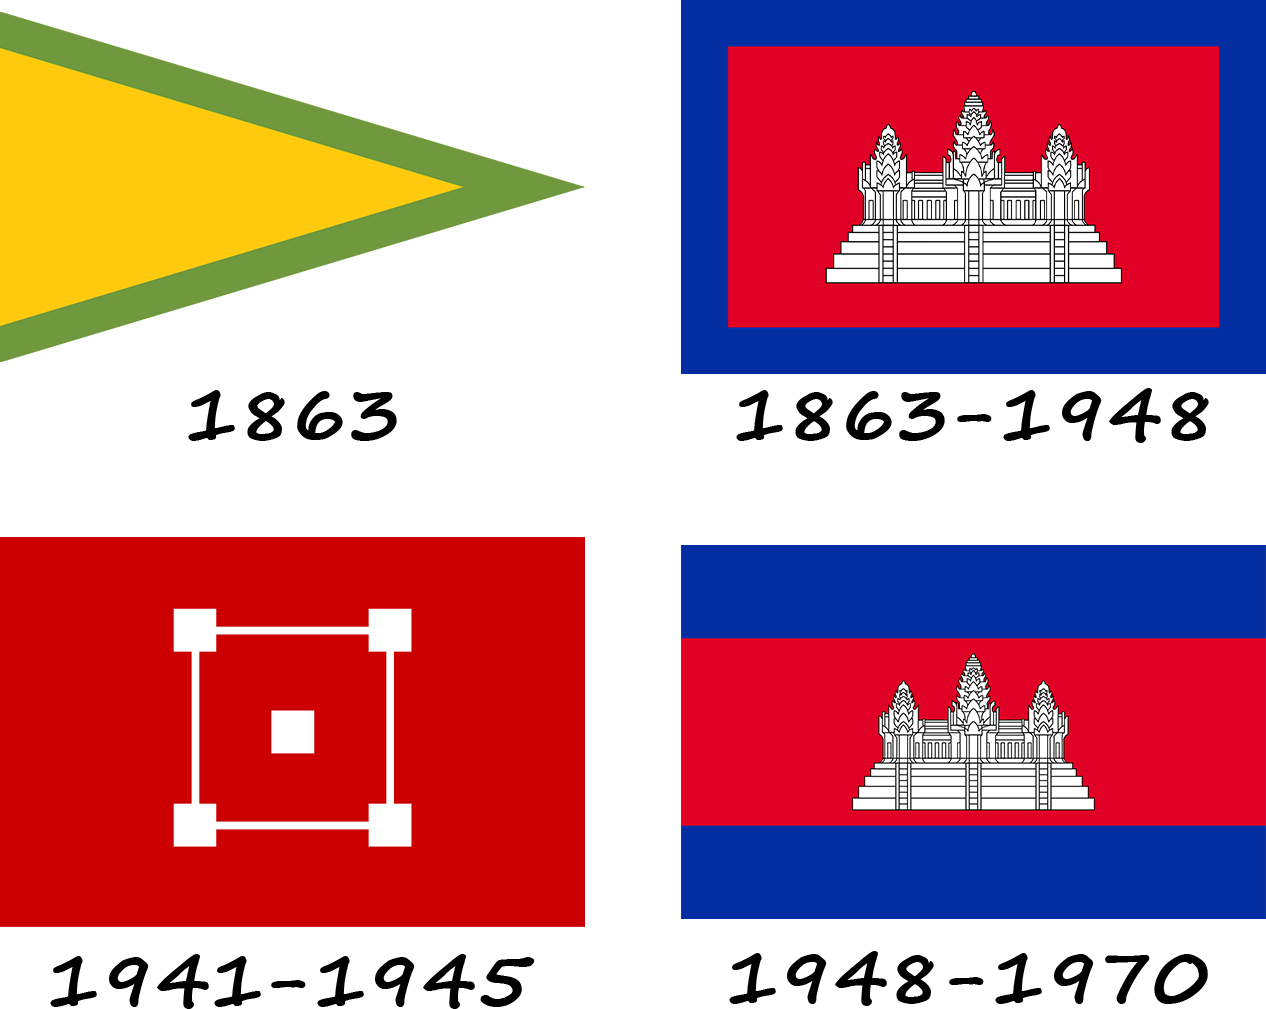 Історія прапору Камбоджі. Як змінювався прапор Камбоджі?